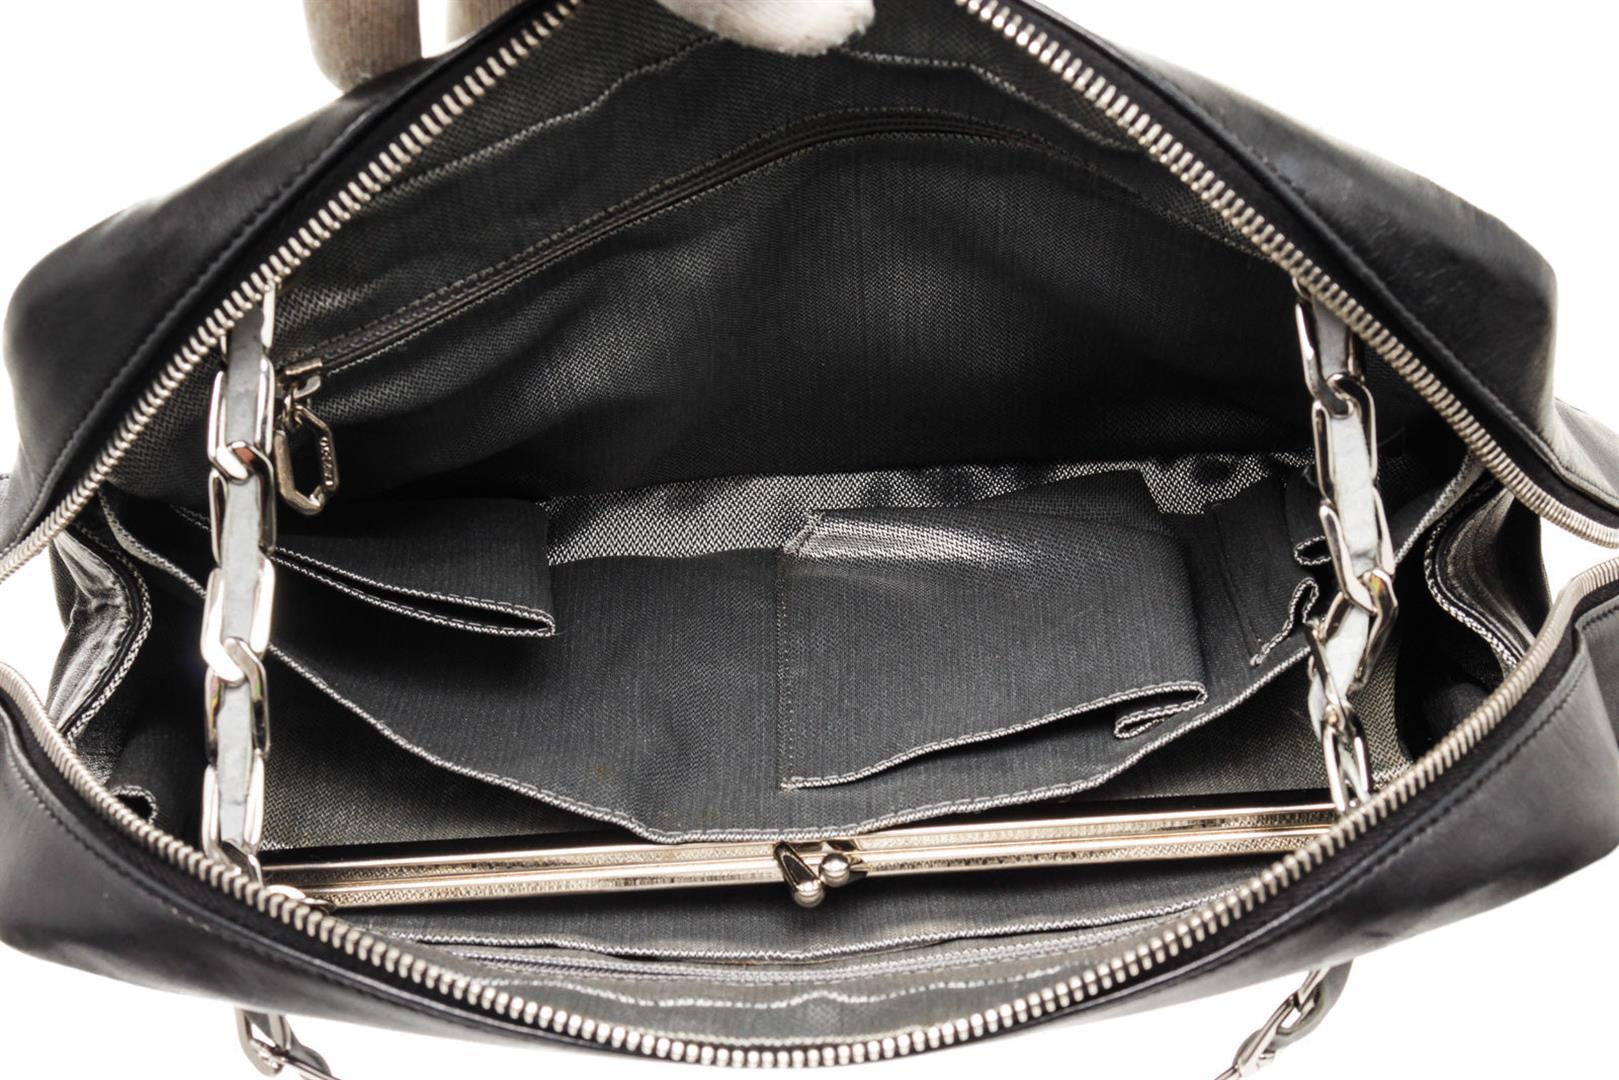 Chanel Black Leather Mademoiselle Shoulder Bag